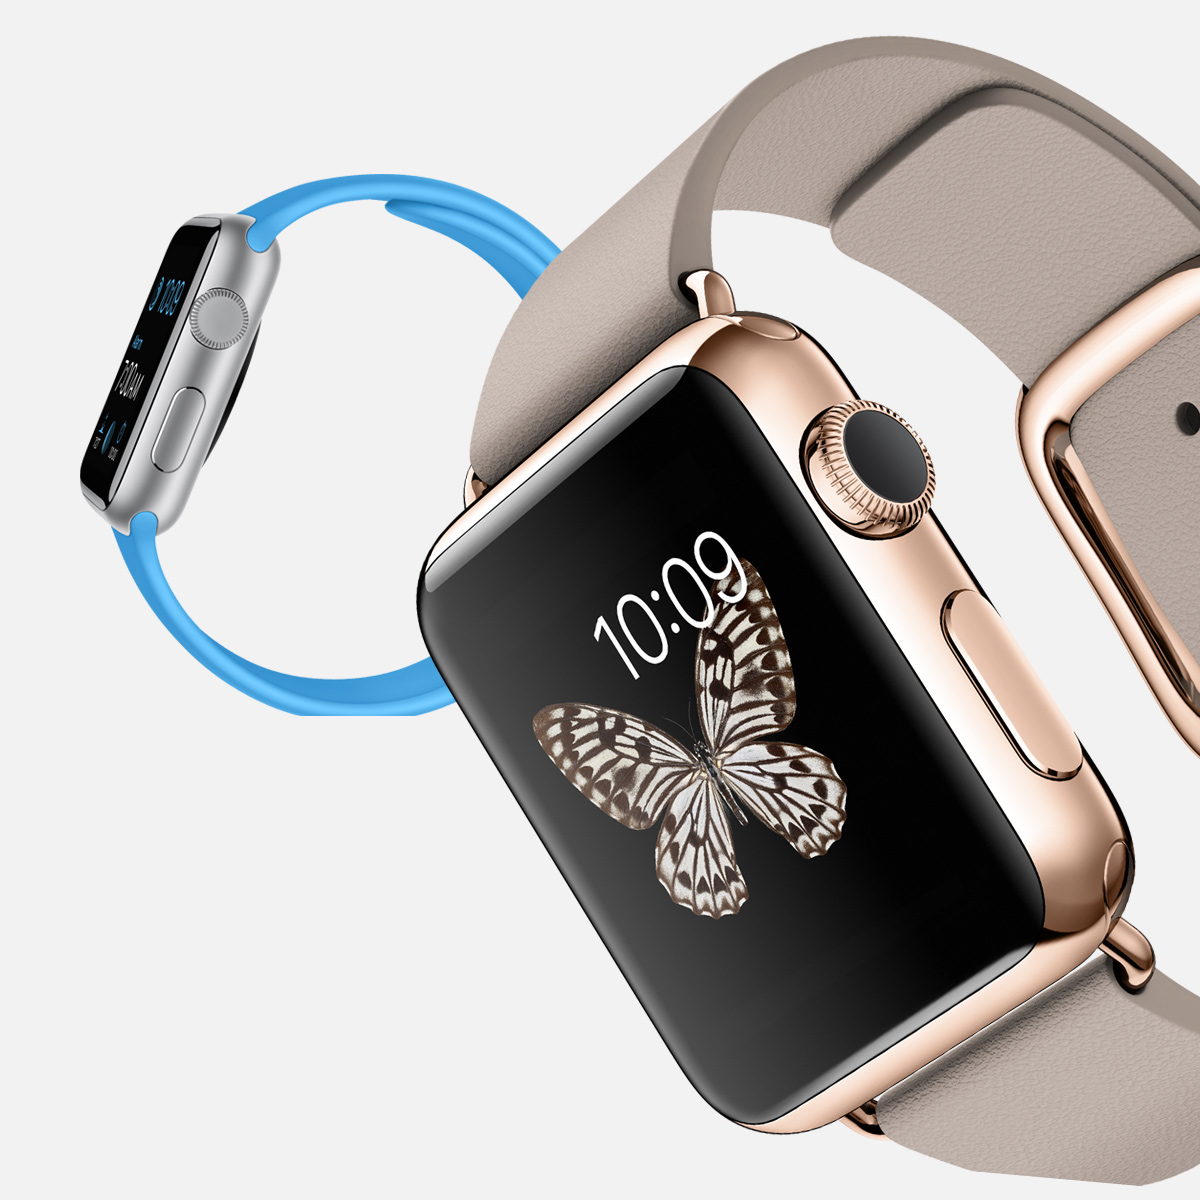 el apple watch llegara al mercado en abril iphone rompe records de venta 2